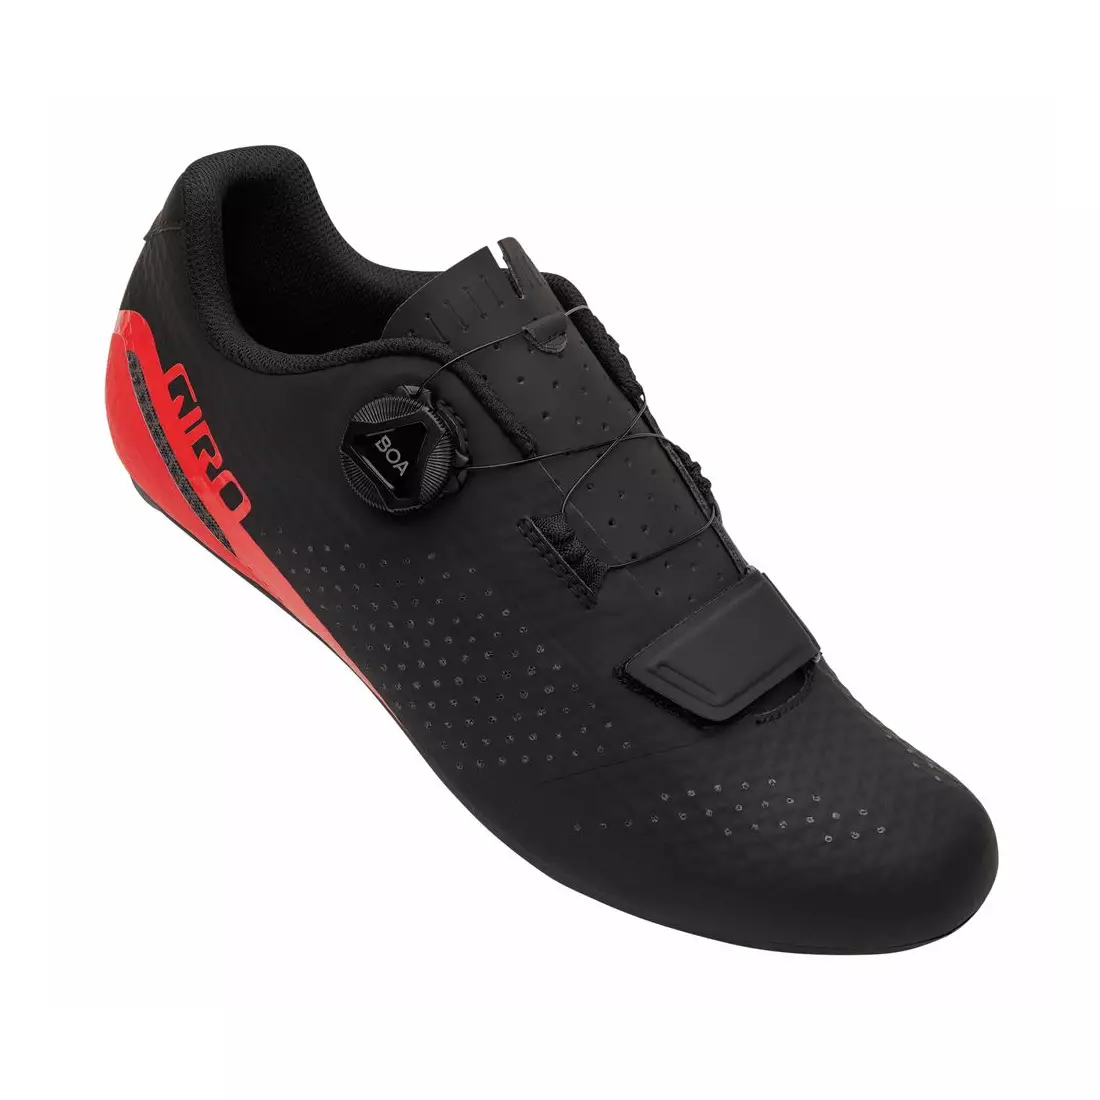 GIRO pánska cyklistická obuv CADET black bright red GR-7126122